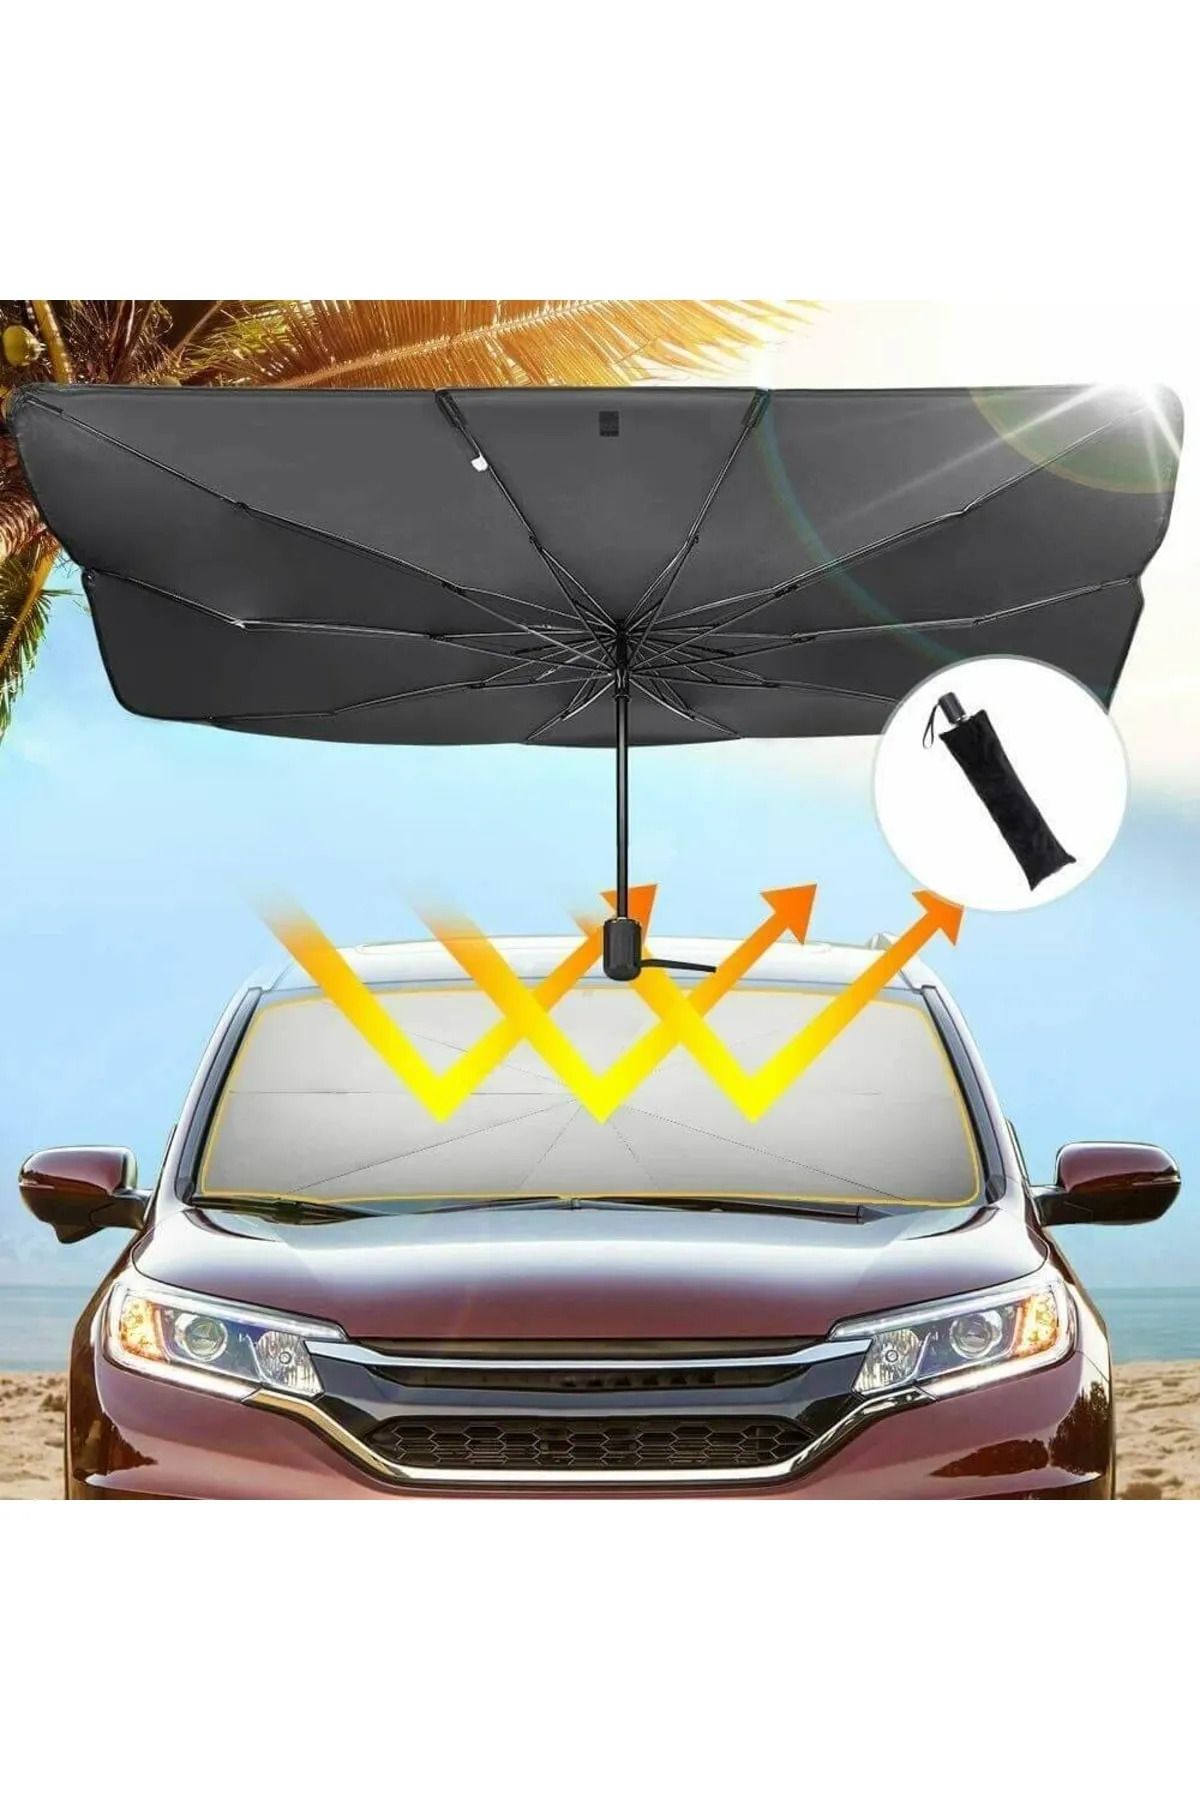 Universal Fiat Palio Araba Ön Cam Güneşlik Katlanabilir Güneşlik Şemsiye Ön Cam Gölgelik